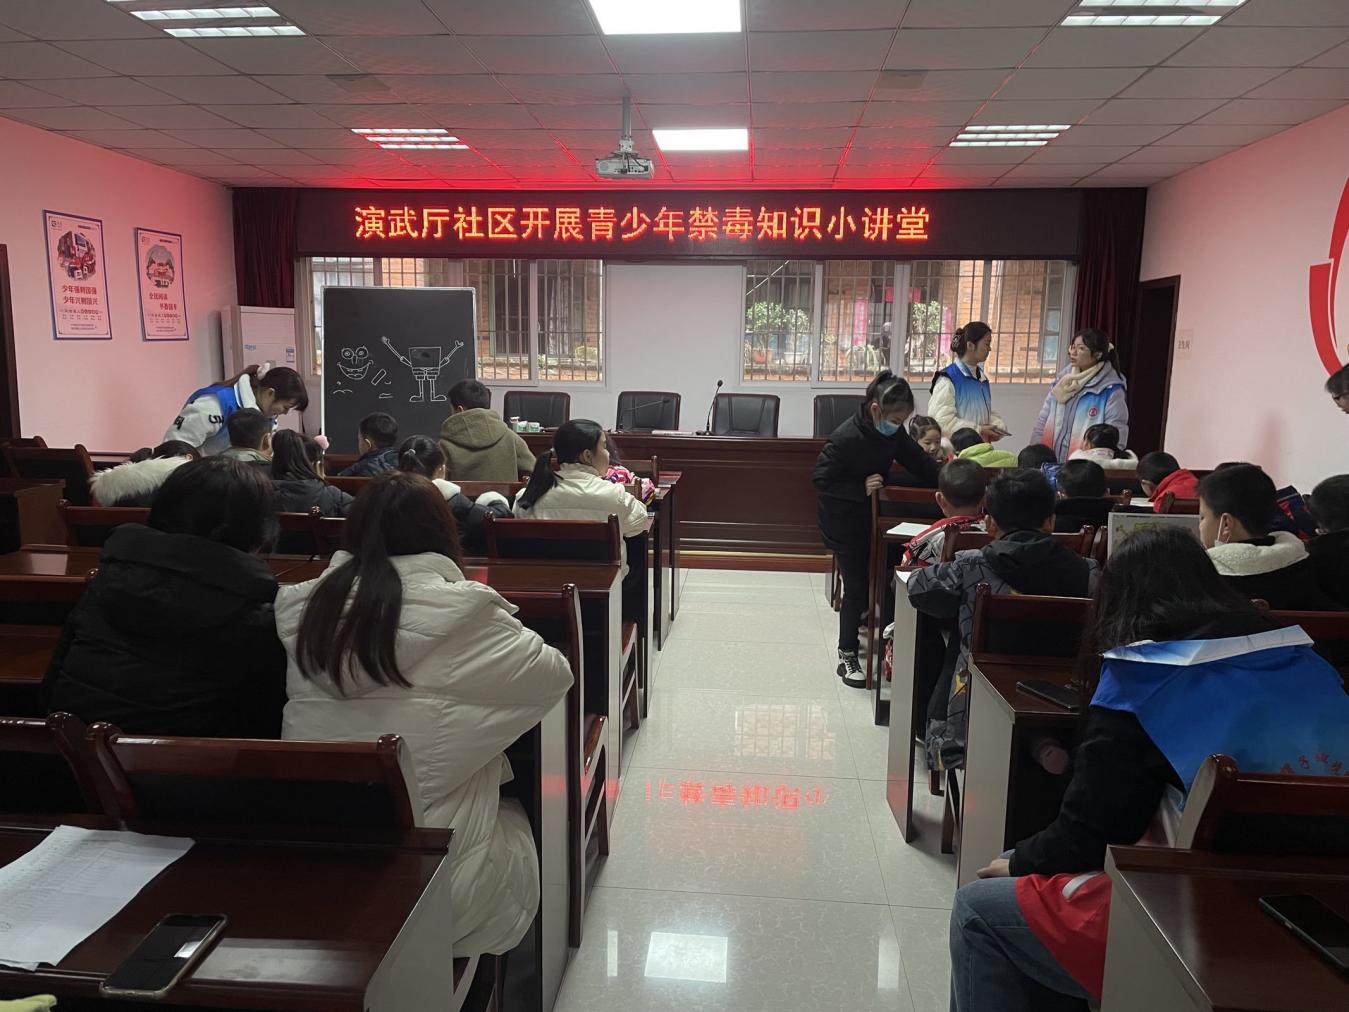 43名学生参加青少年禁毒知识小课堂活动辖区